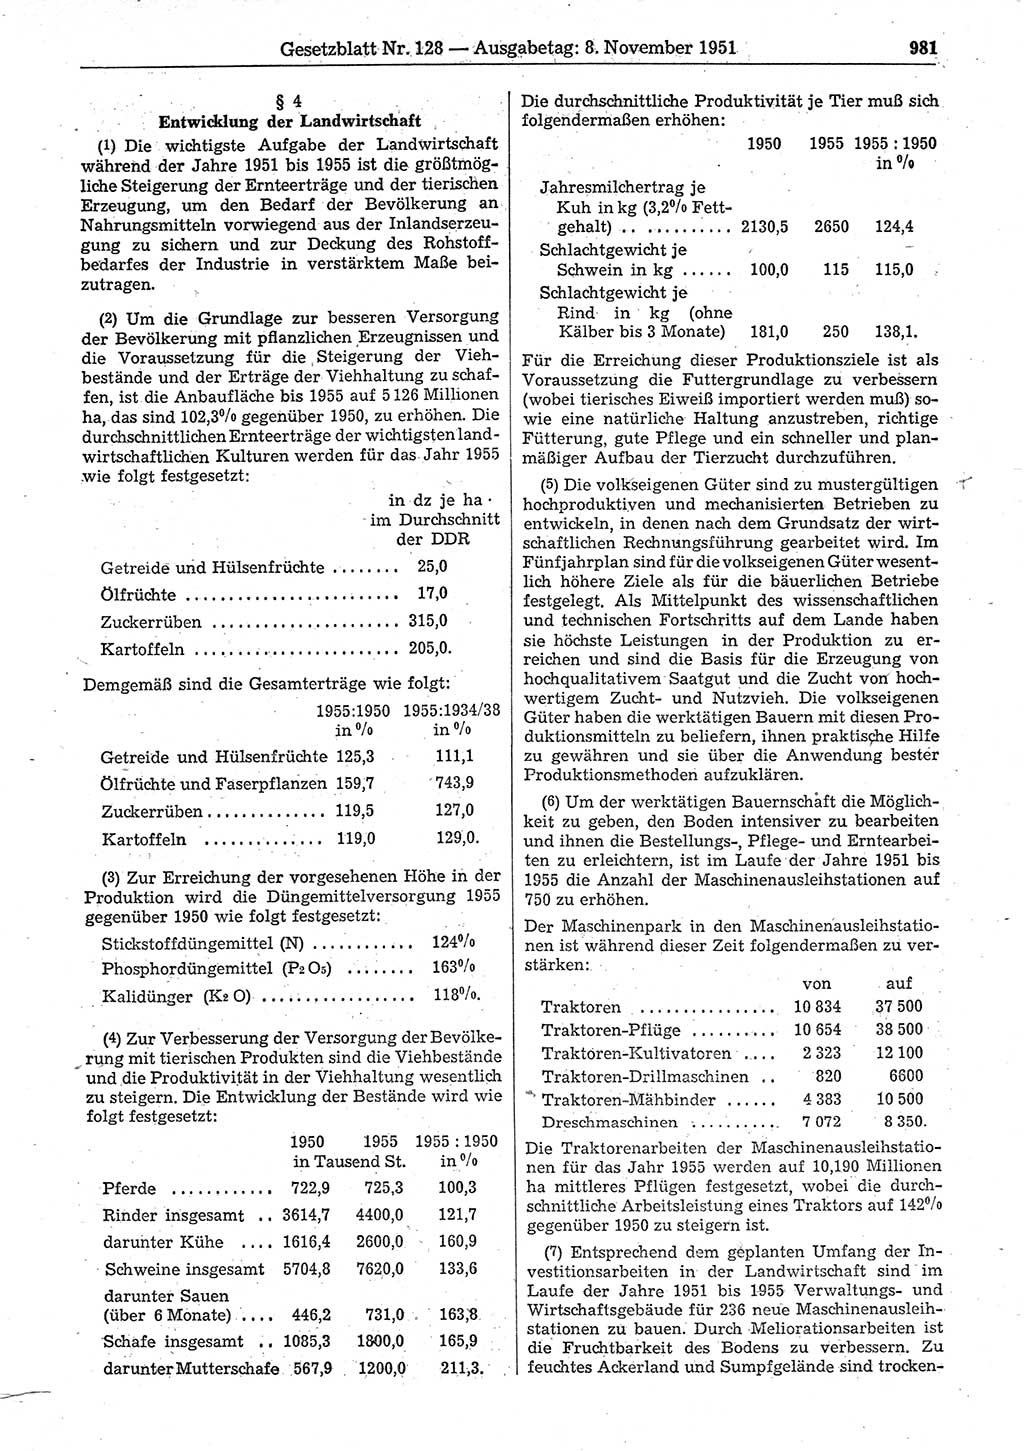 Gesetzblatt (GBl.) der Deutschen Demokratischen Republik (DDR) 1951, Seite 981 (GBl. DDR 1951, S. 981)